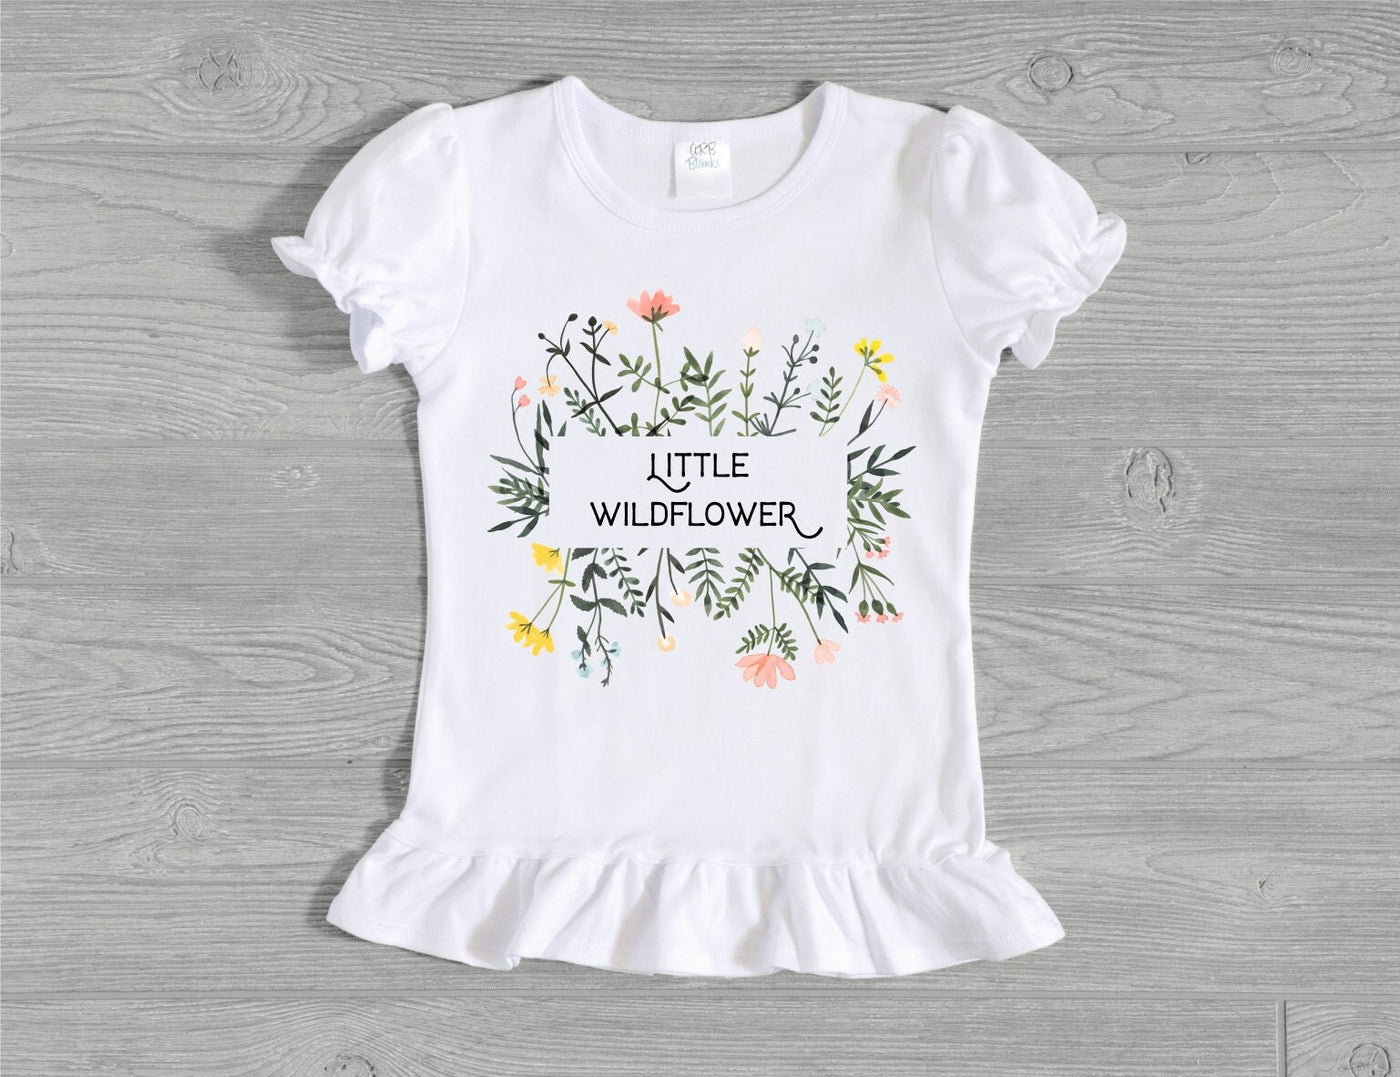 Little Wildflower Toddler Girl's Shirt, Wildflower Kids Shirt, Wildflower Tshirt, Toddler Girl's Tee Shirt, Cute Kids Shirt, Kids Floral Tee